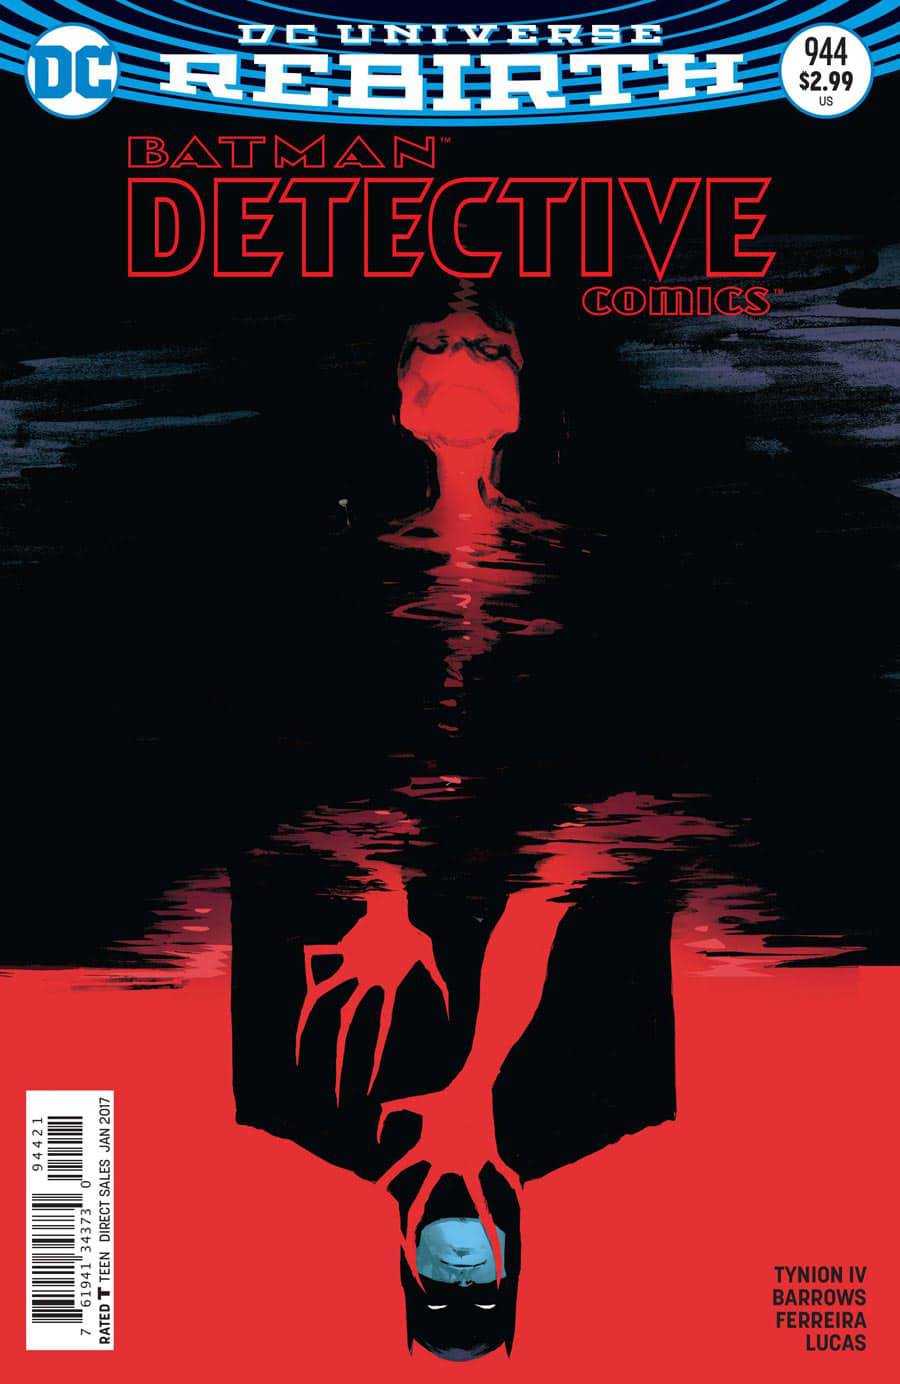 Detective Comics #944 Variant Edition (1937)